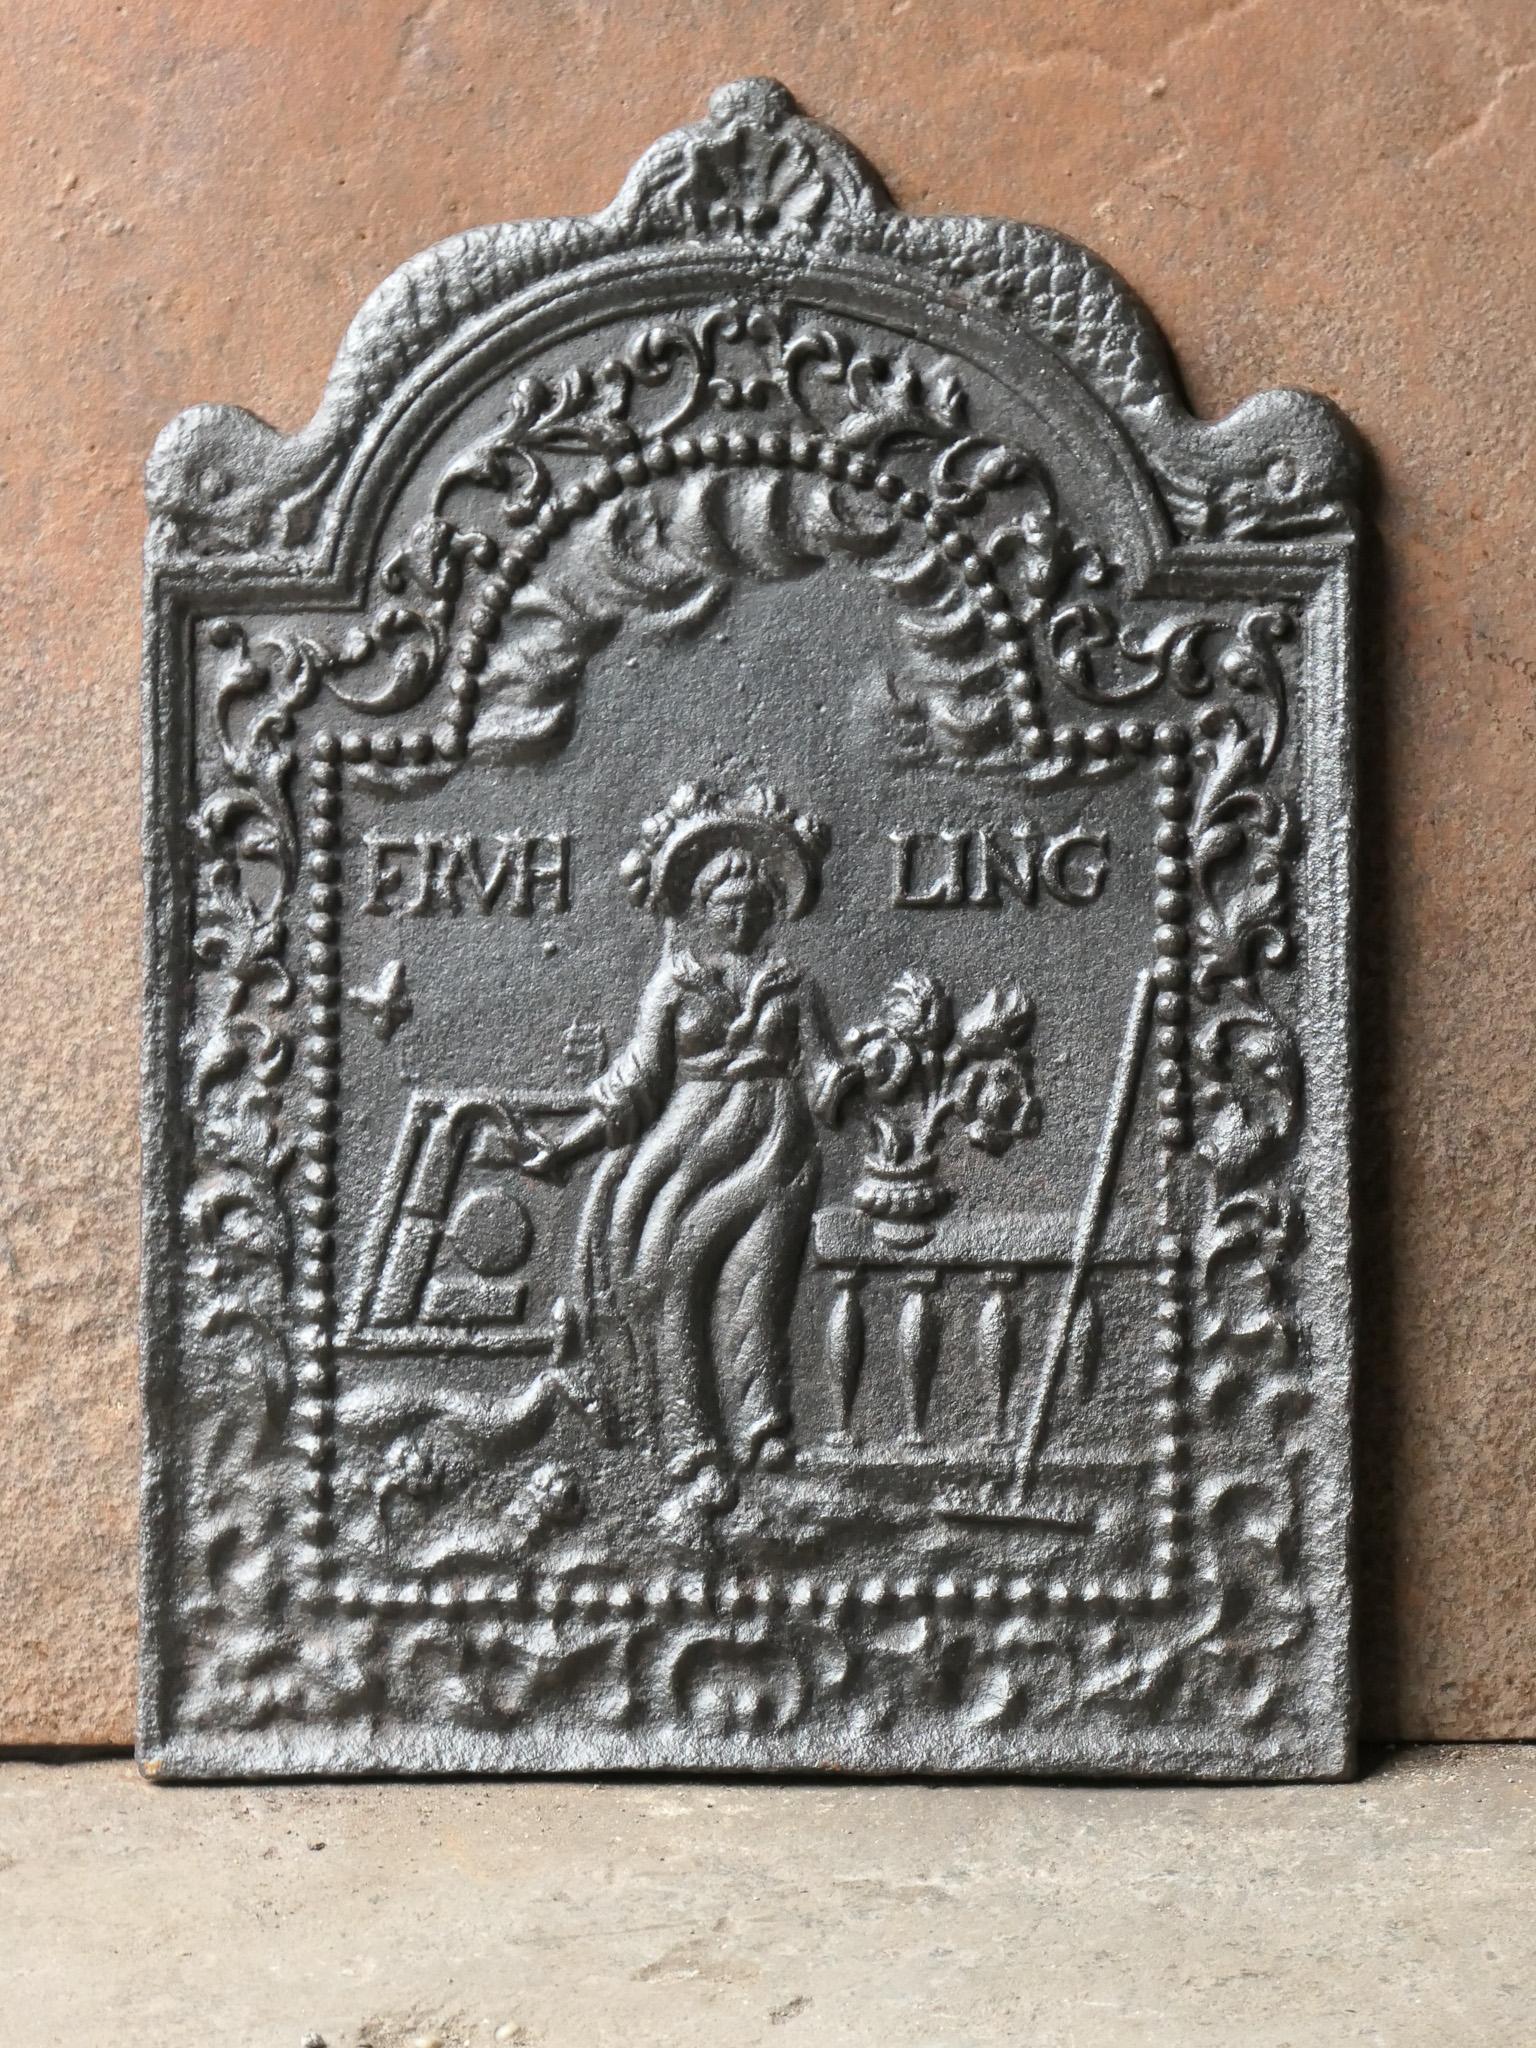 Niederländischer Louis XIV-Feuerboden mit einer Allegorie des Frühlings. Der Kaminboden stammt aus dem 17. oder frühen 18. Jahrhundert. 

Die Feuerrückwand ist aus Gusseisen und hat eine schwarze / zinnfarbene Patina. Die Kaminrückwand ist in